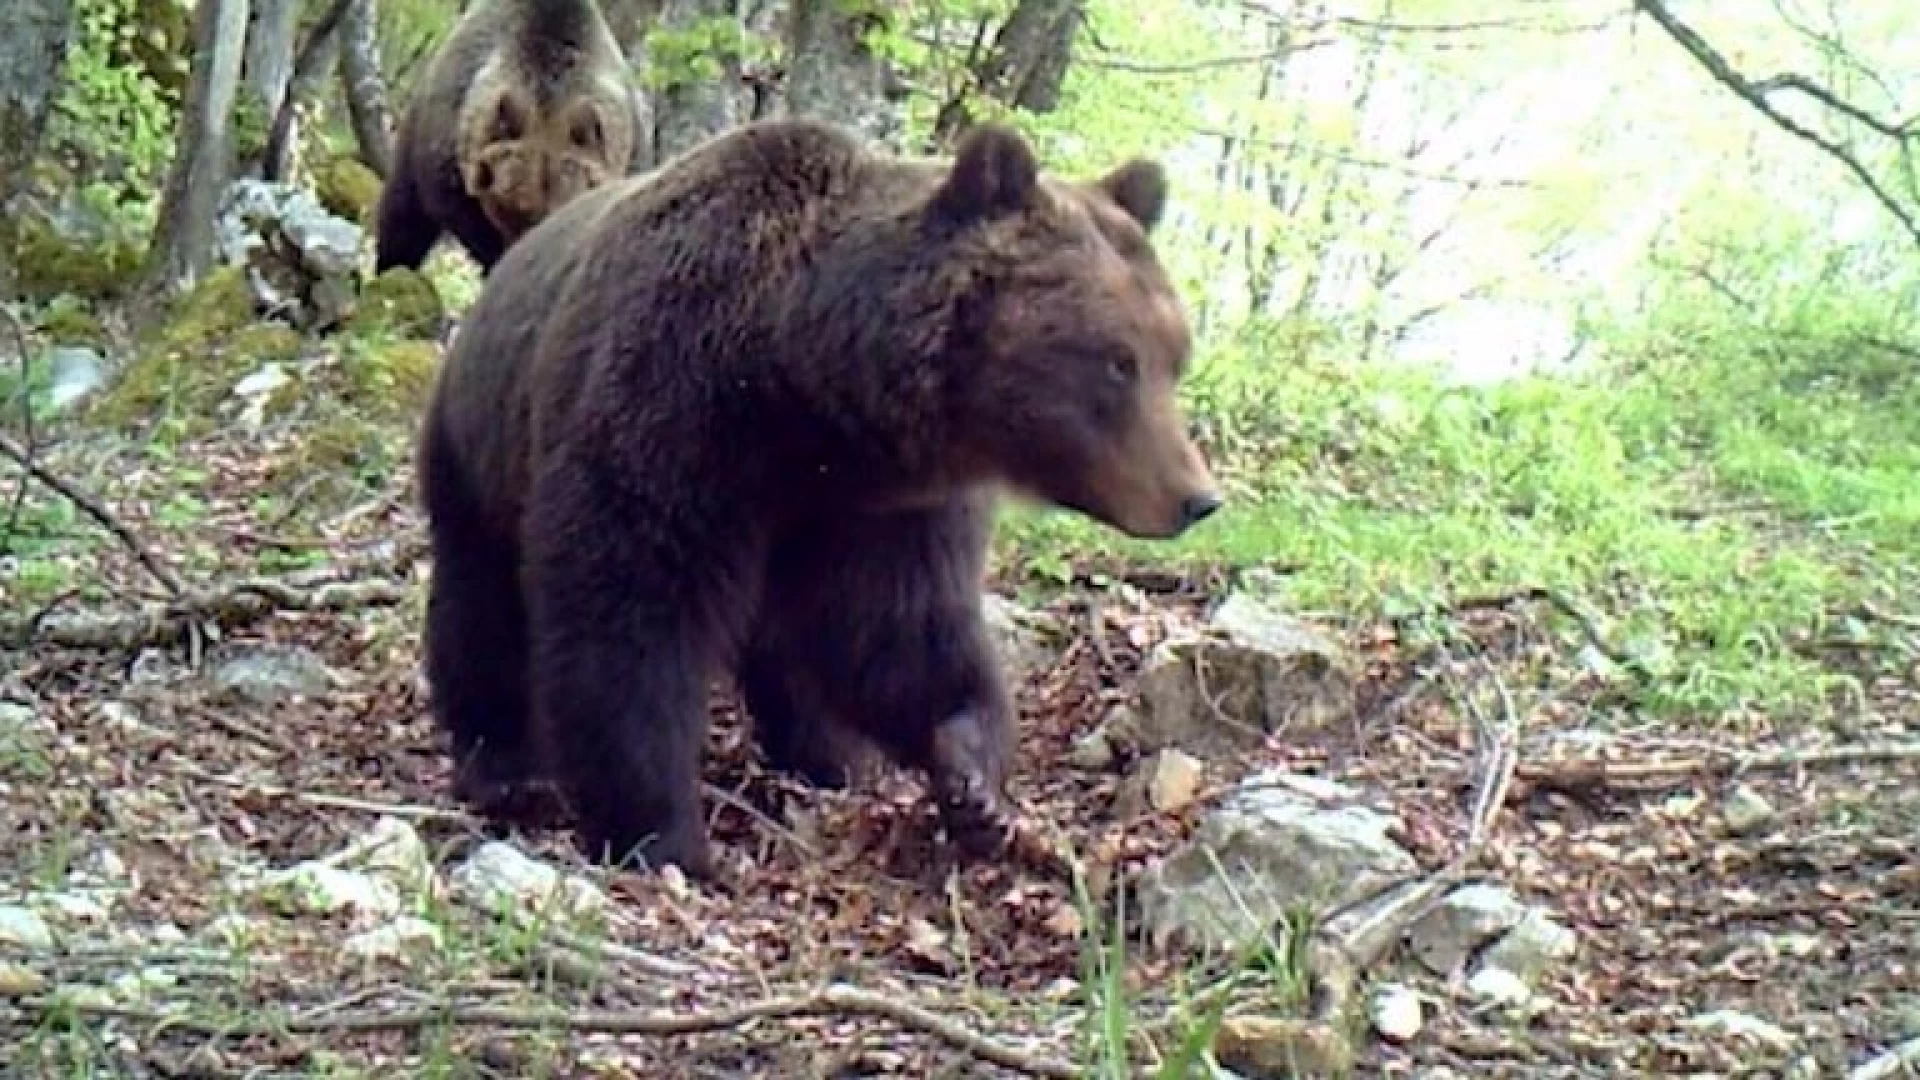 Pnalm nasce il numero verde per segnalare la presenza degli orsi. Tutte le info nel nostro servizio video.